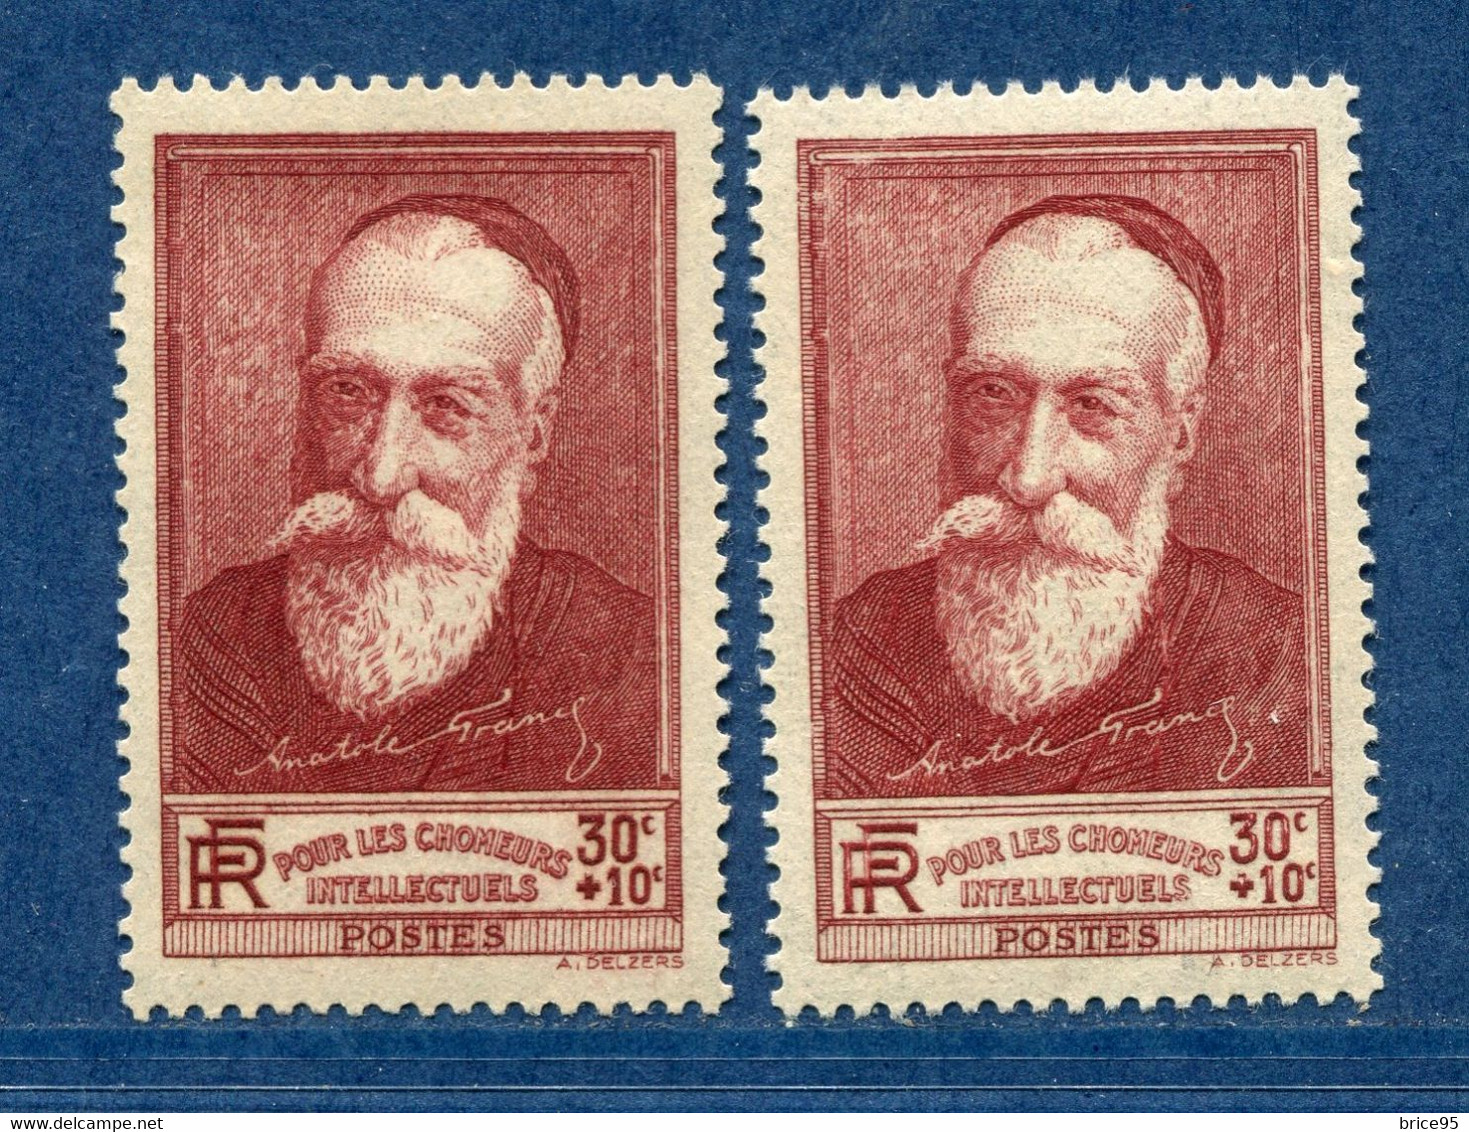 ⭐ France - Variété - YT N° 380 - Couleurs - Pétouille - Chiffres Blancs - Neuf Sans Charnière - 1938 ⭐ - Unused Stamps